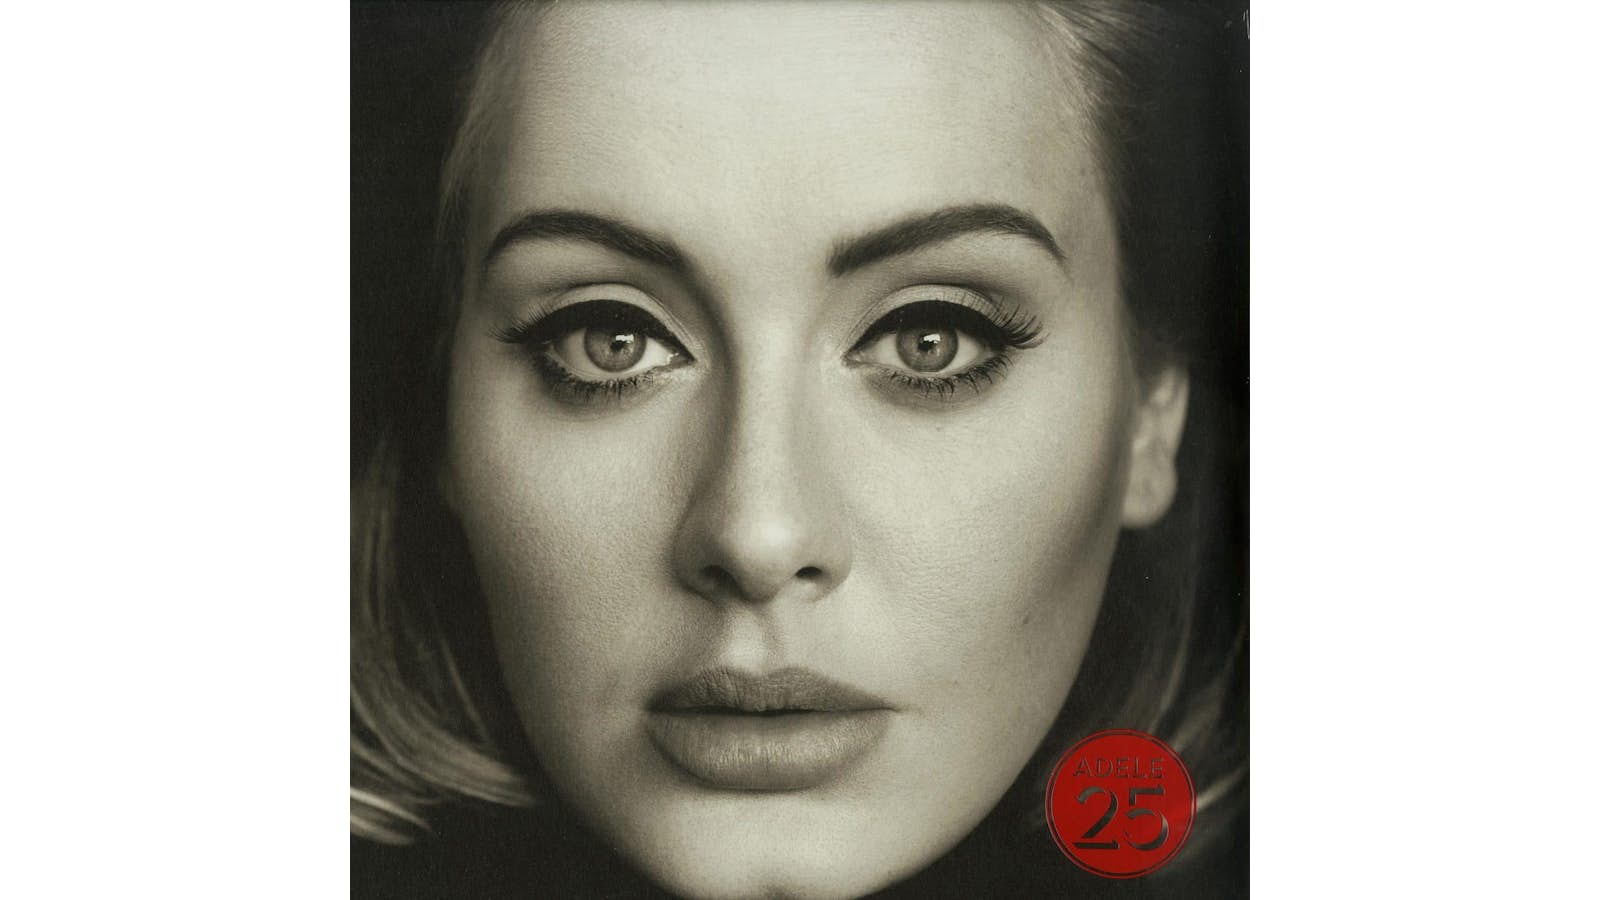 Discos Eternos - Adele 25 Vinilo Lp Nuevo Sellado 129